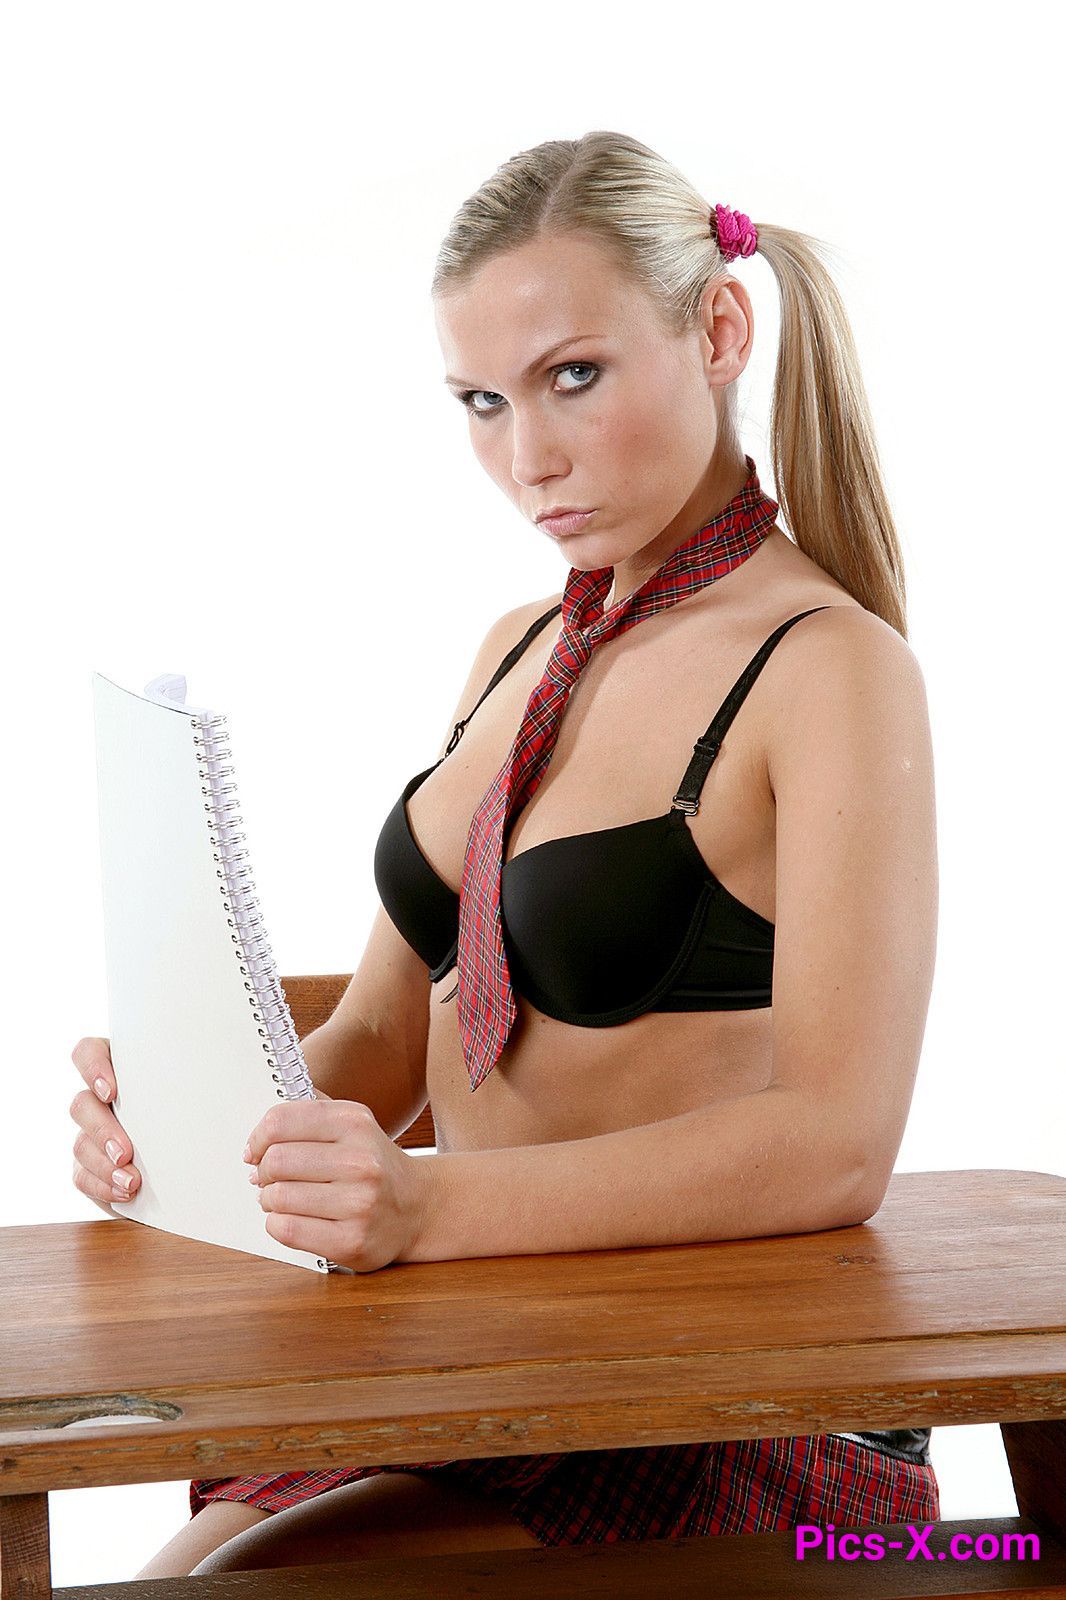 Misa in Hot Schoolgirl Outfit on Desk - Matrix Models - Image 24